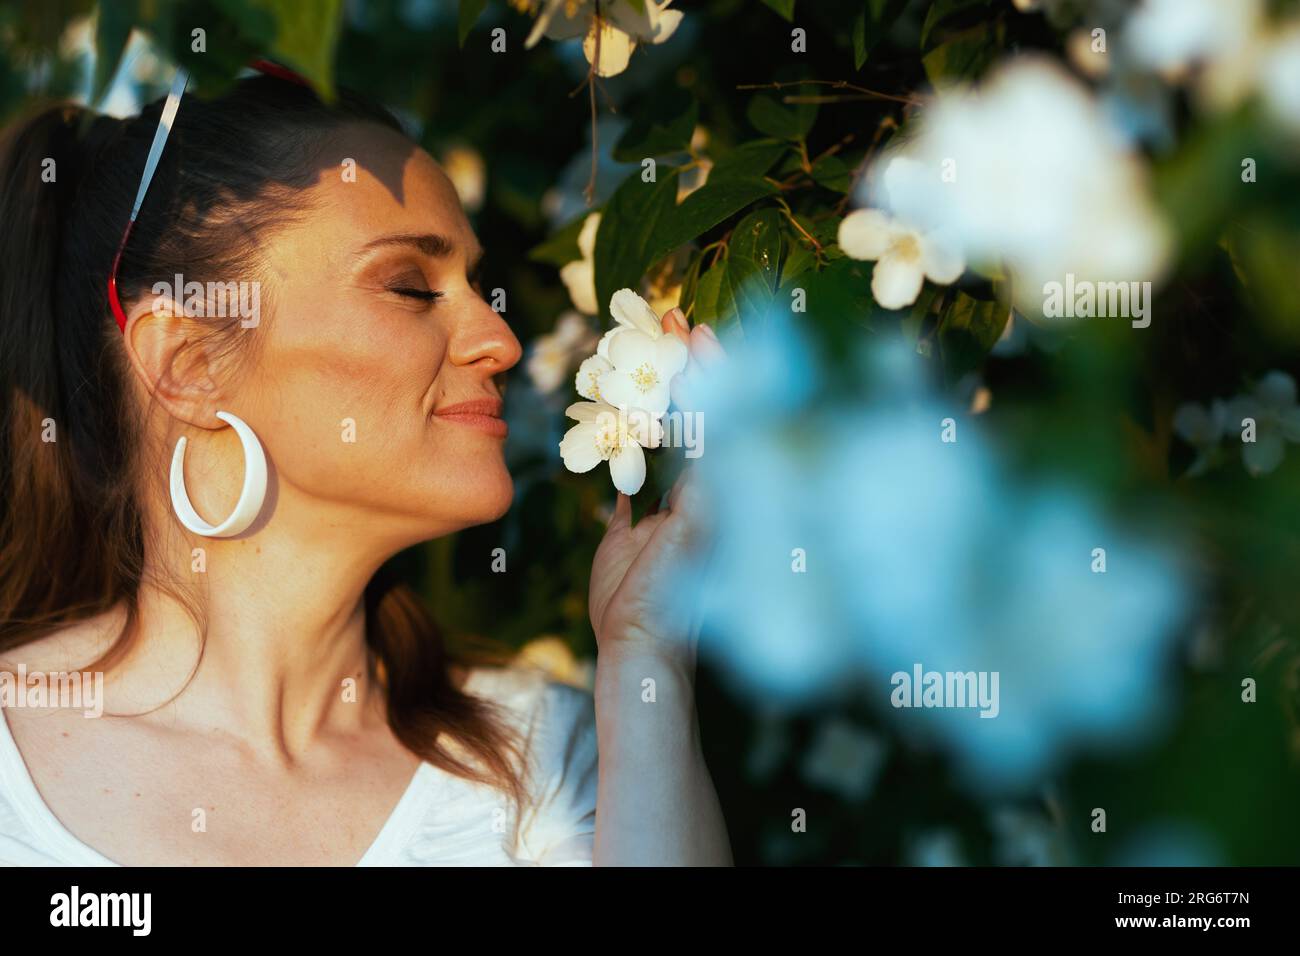 Heure d'été. femme élégante souriante en chemise blanche près de l'arbre à fleurs. Banque D'Images